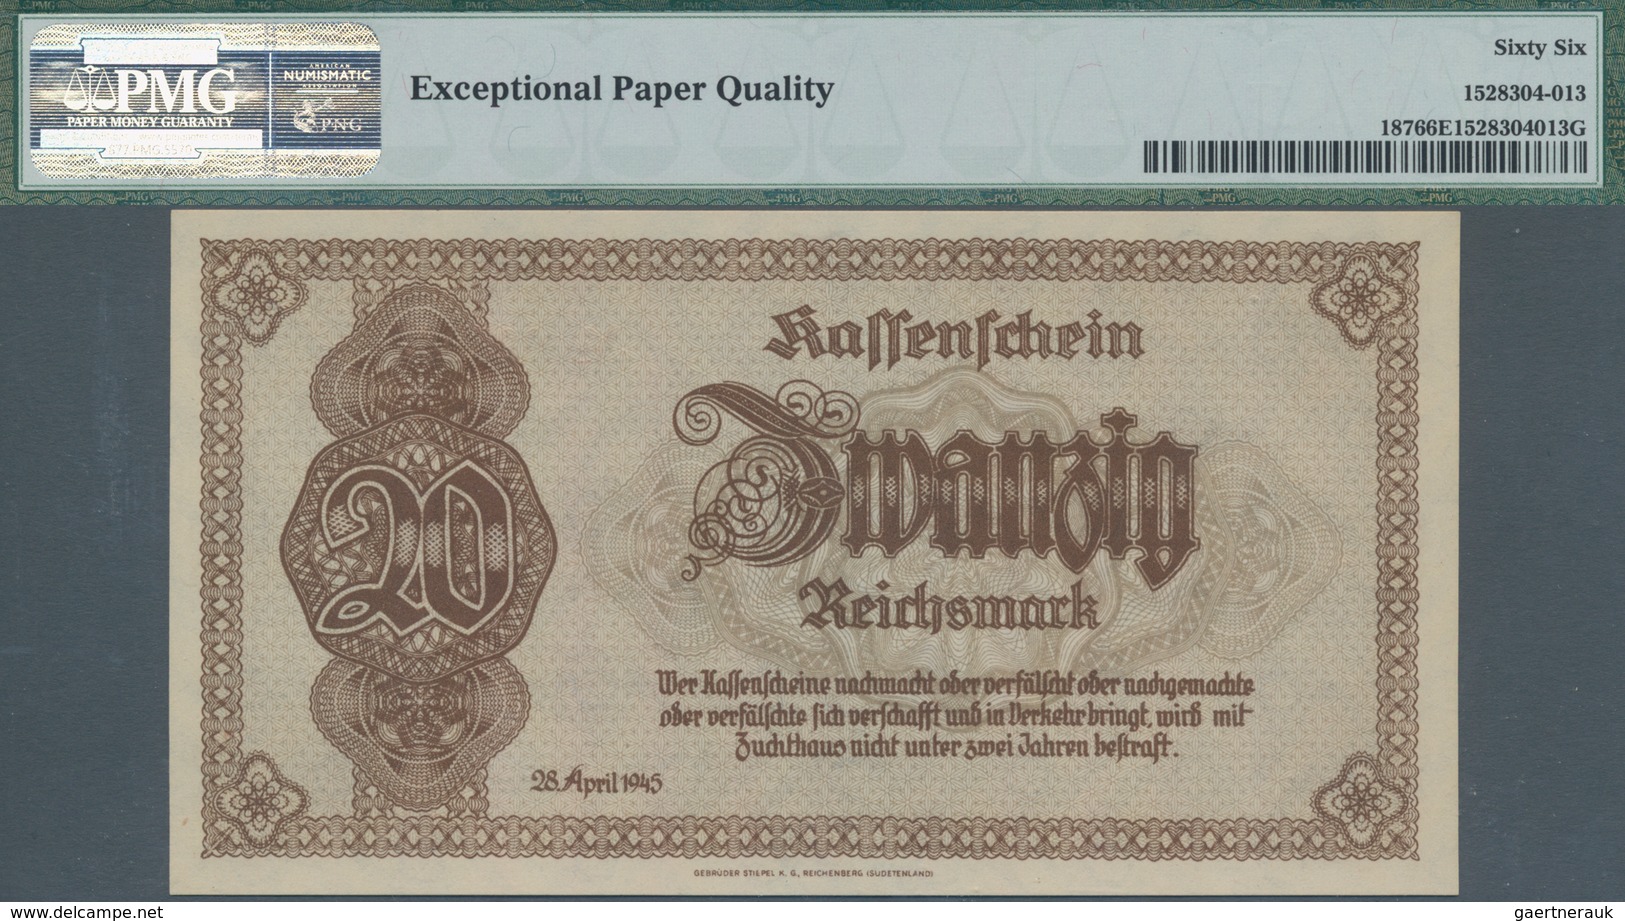 Deutschland - Deutsches Reich bis 1945: Lot mit 4 Banknoten 20 Reichsmark 1945, Ro.186, alle PMG gep